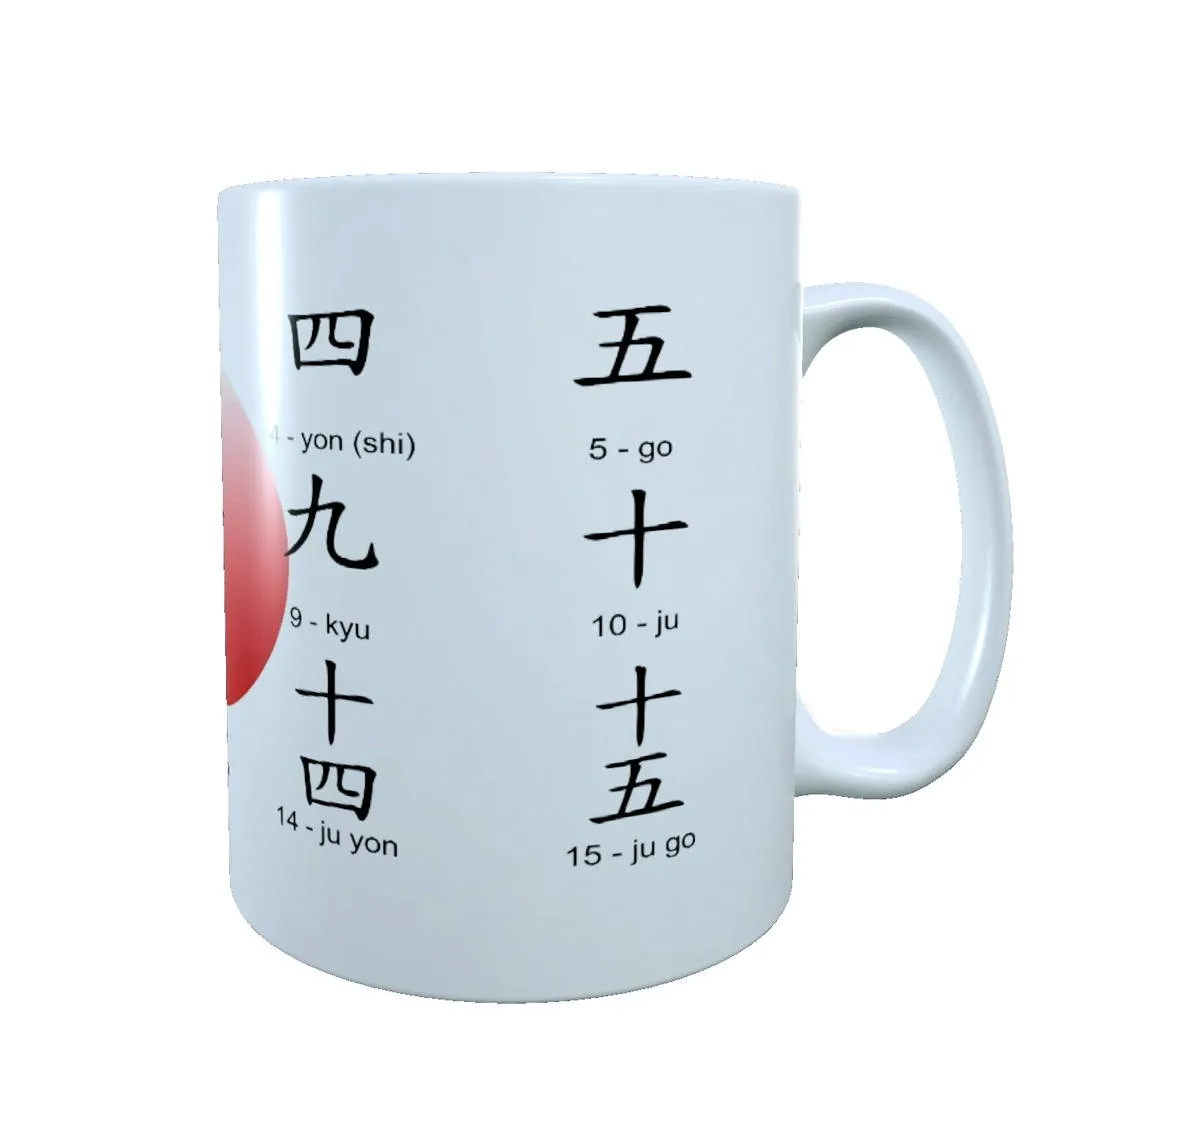 Mug - Tasse à cafe - Tasse chiffres japonais